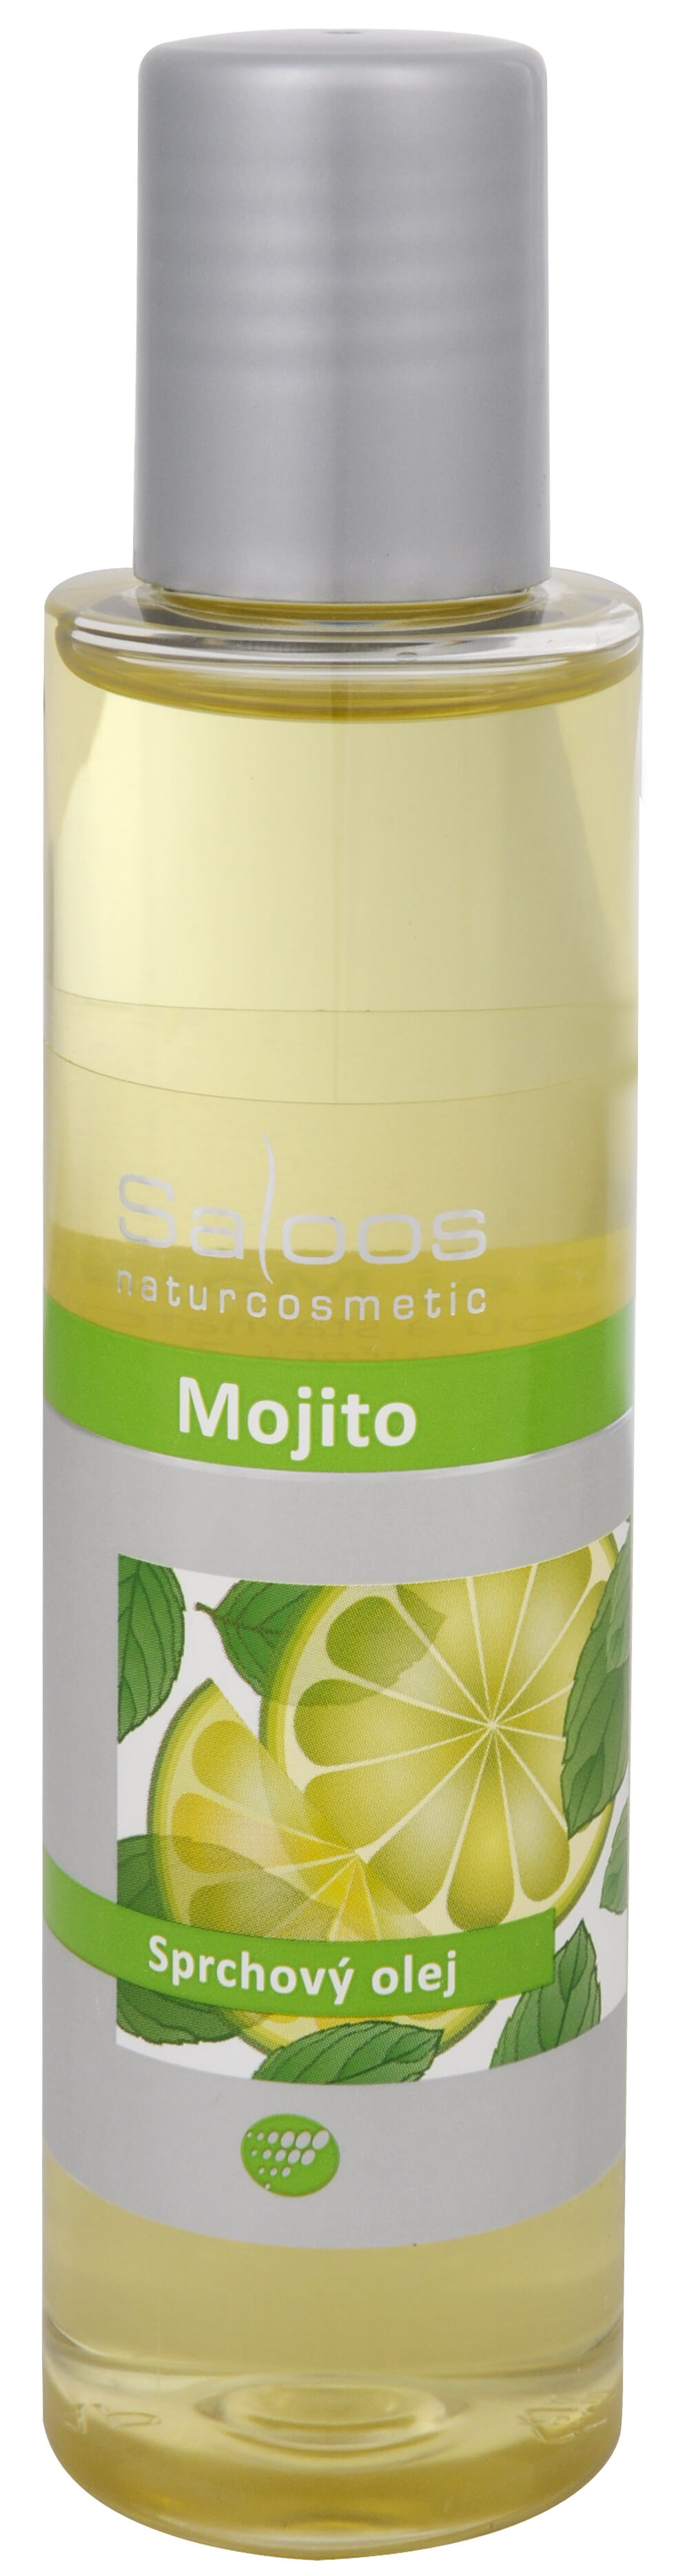 Saloos Sprchový olej - Mojito 125 ml + 2 mesiace na vrátenie tovaru